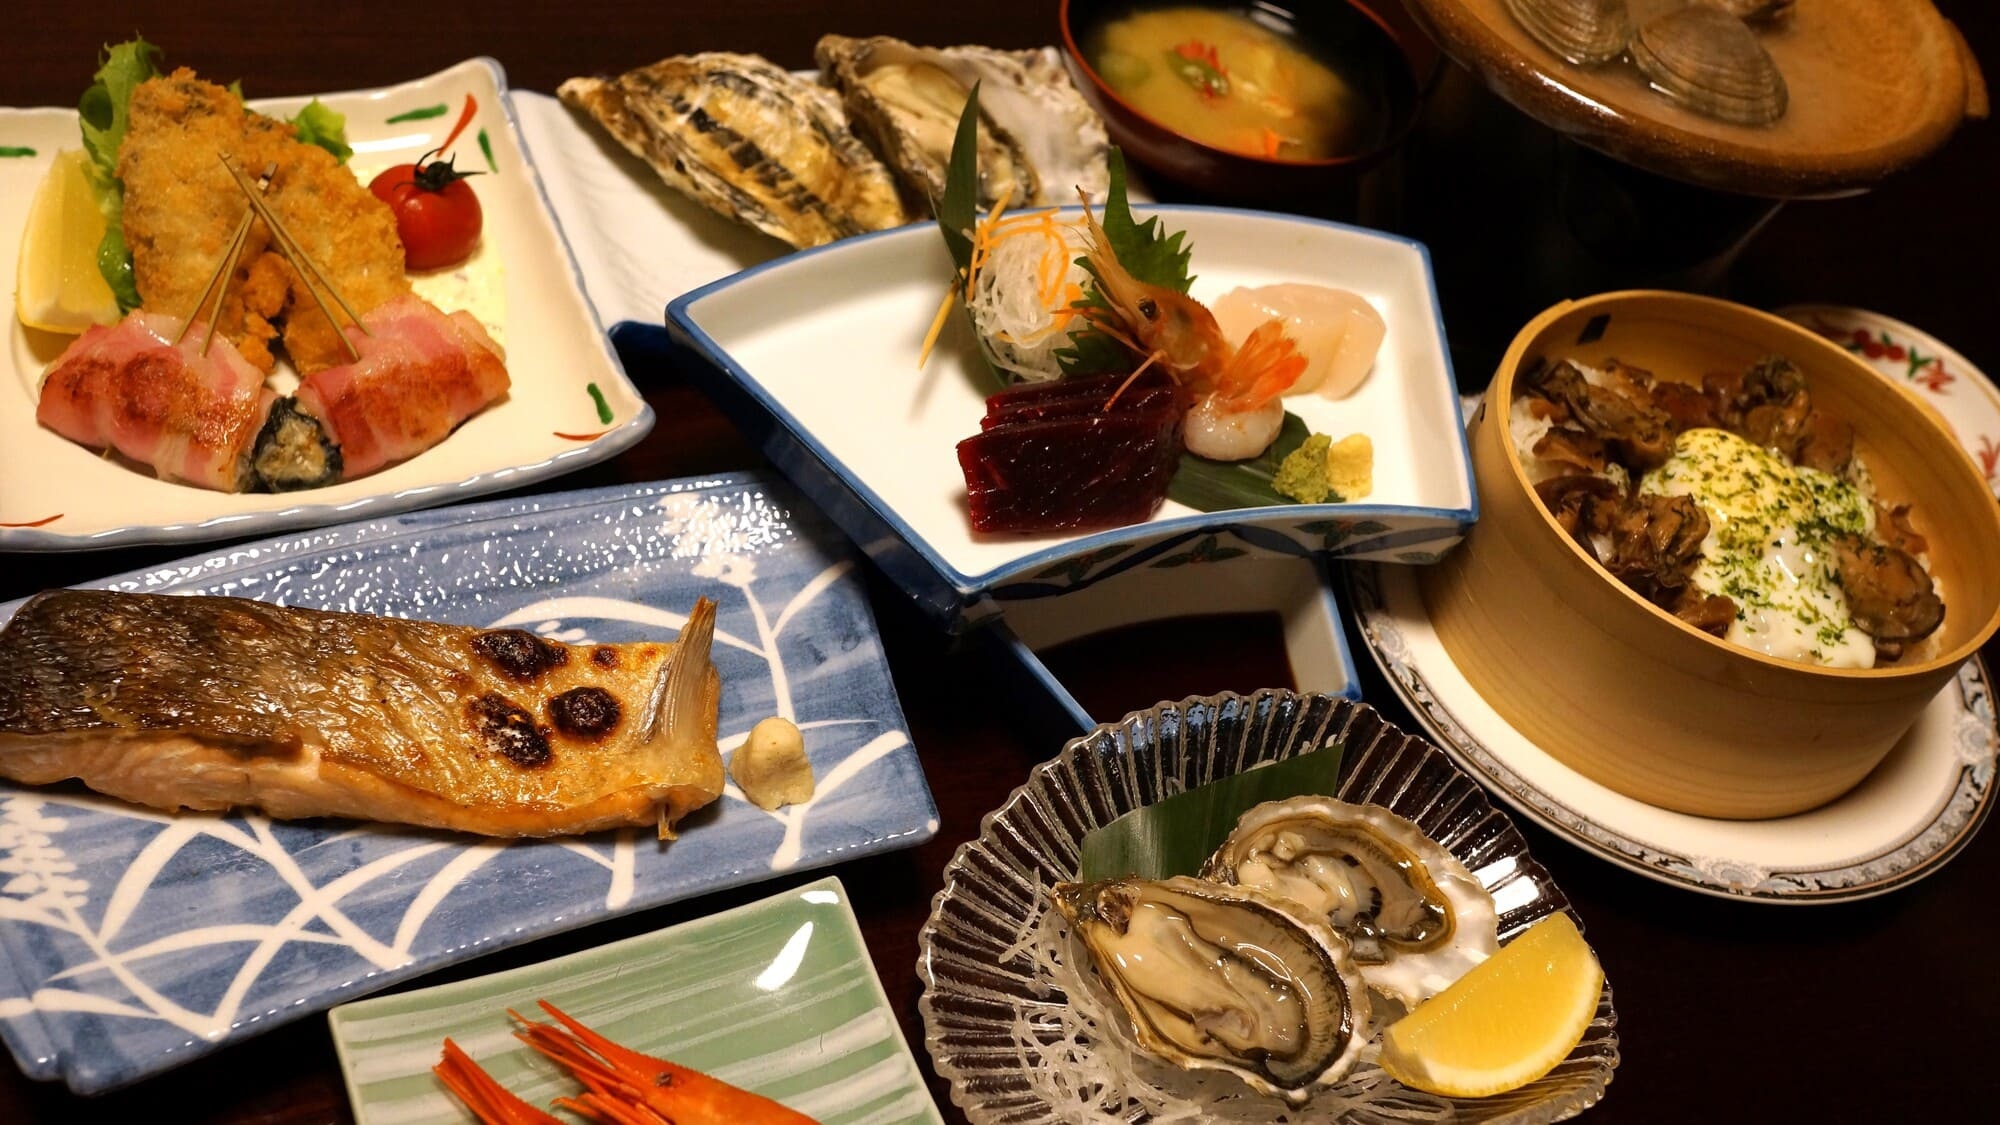 ◆【ワンドリンク付き】厚岸産の牡蠣料理をフルコースで！一番人気の牡蠣御膳プラン【夕朝食付】